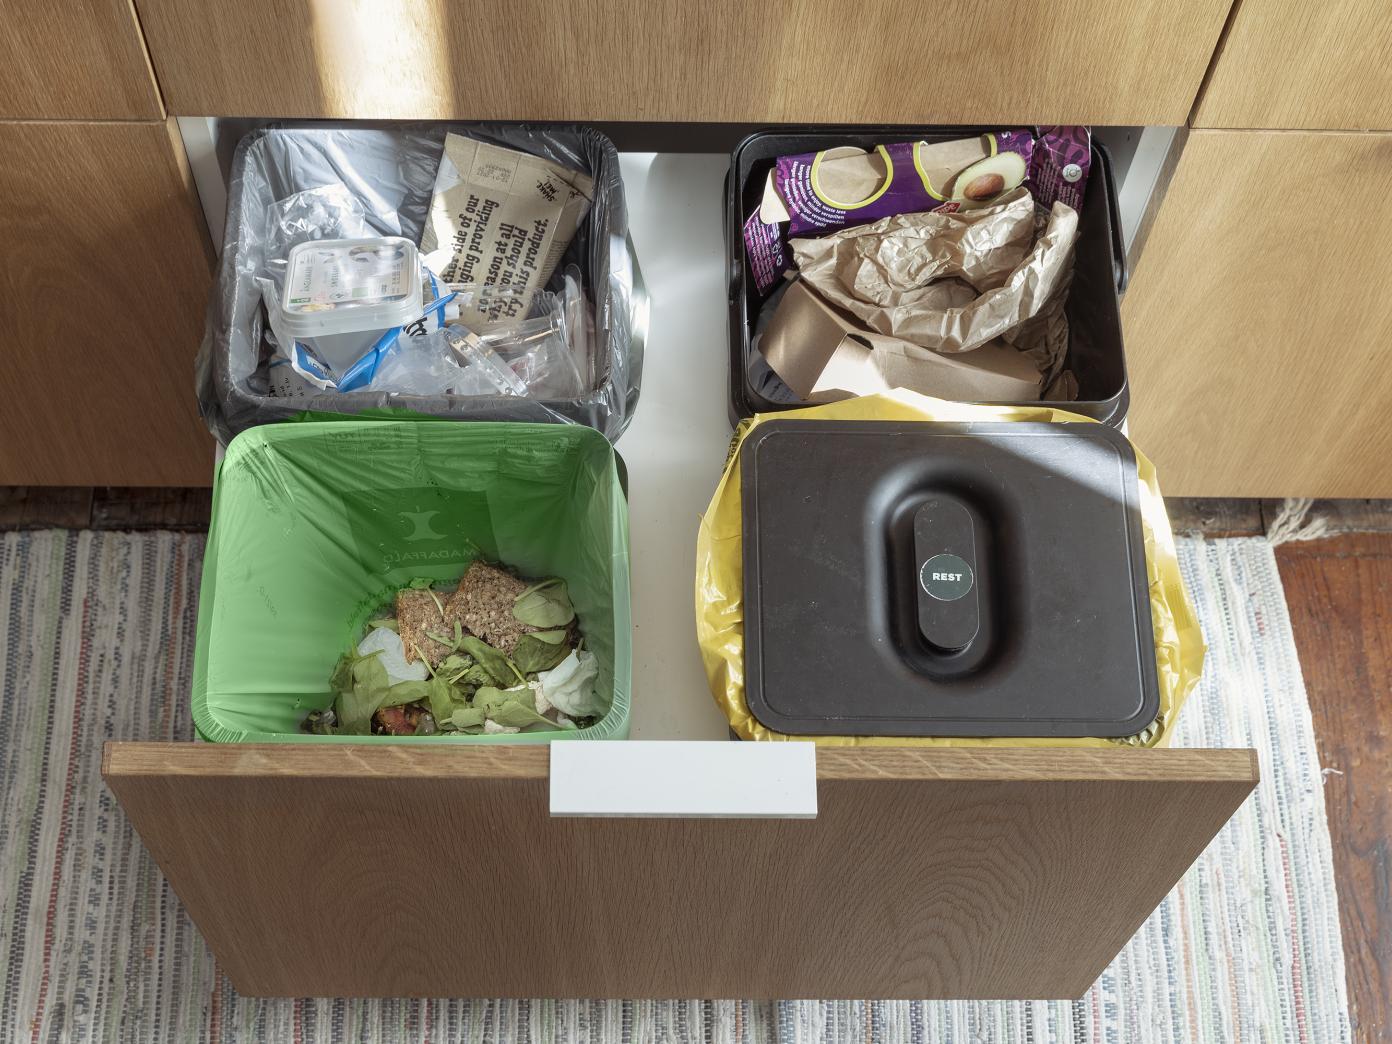 Skab med dyb skuffe under køkkenvasken. I skuffen står 4 affaldspande til plast, pap, rest og madaffald.